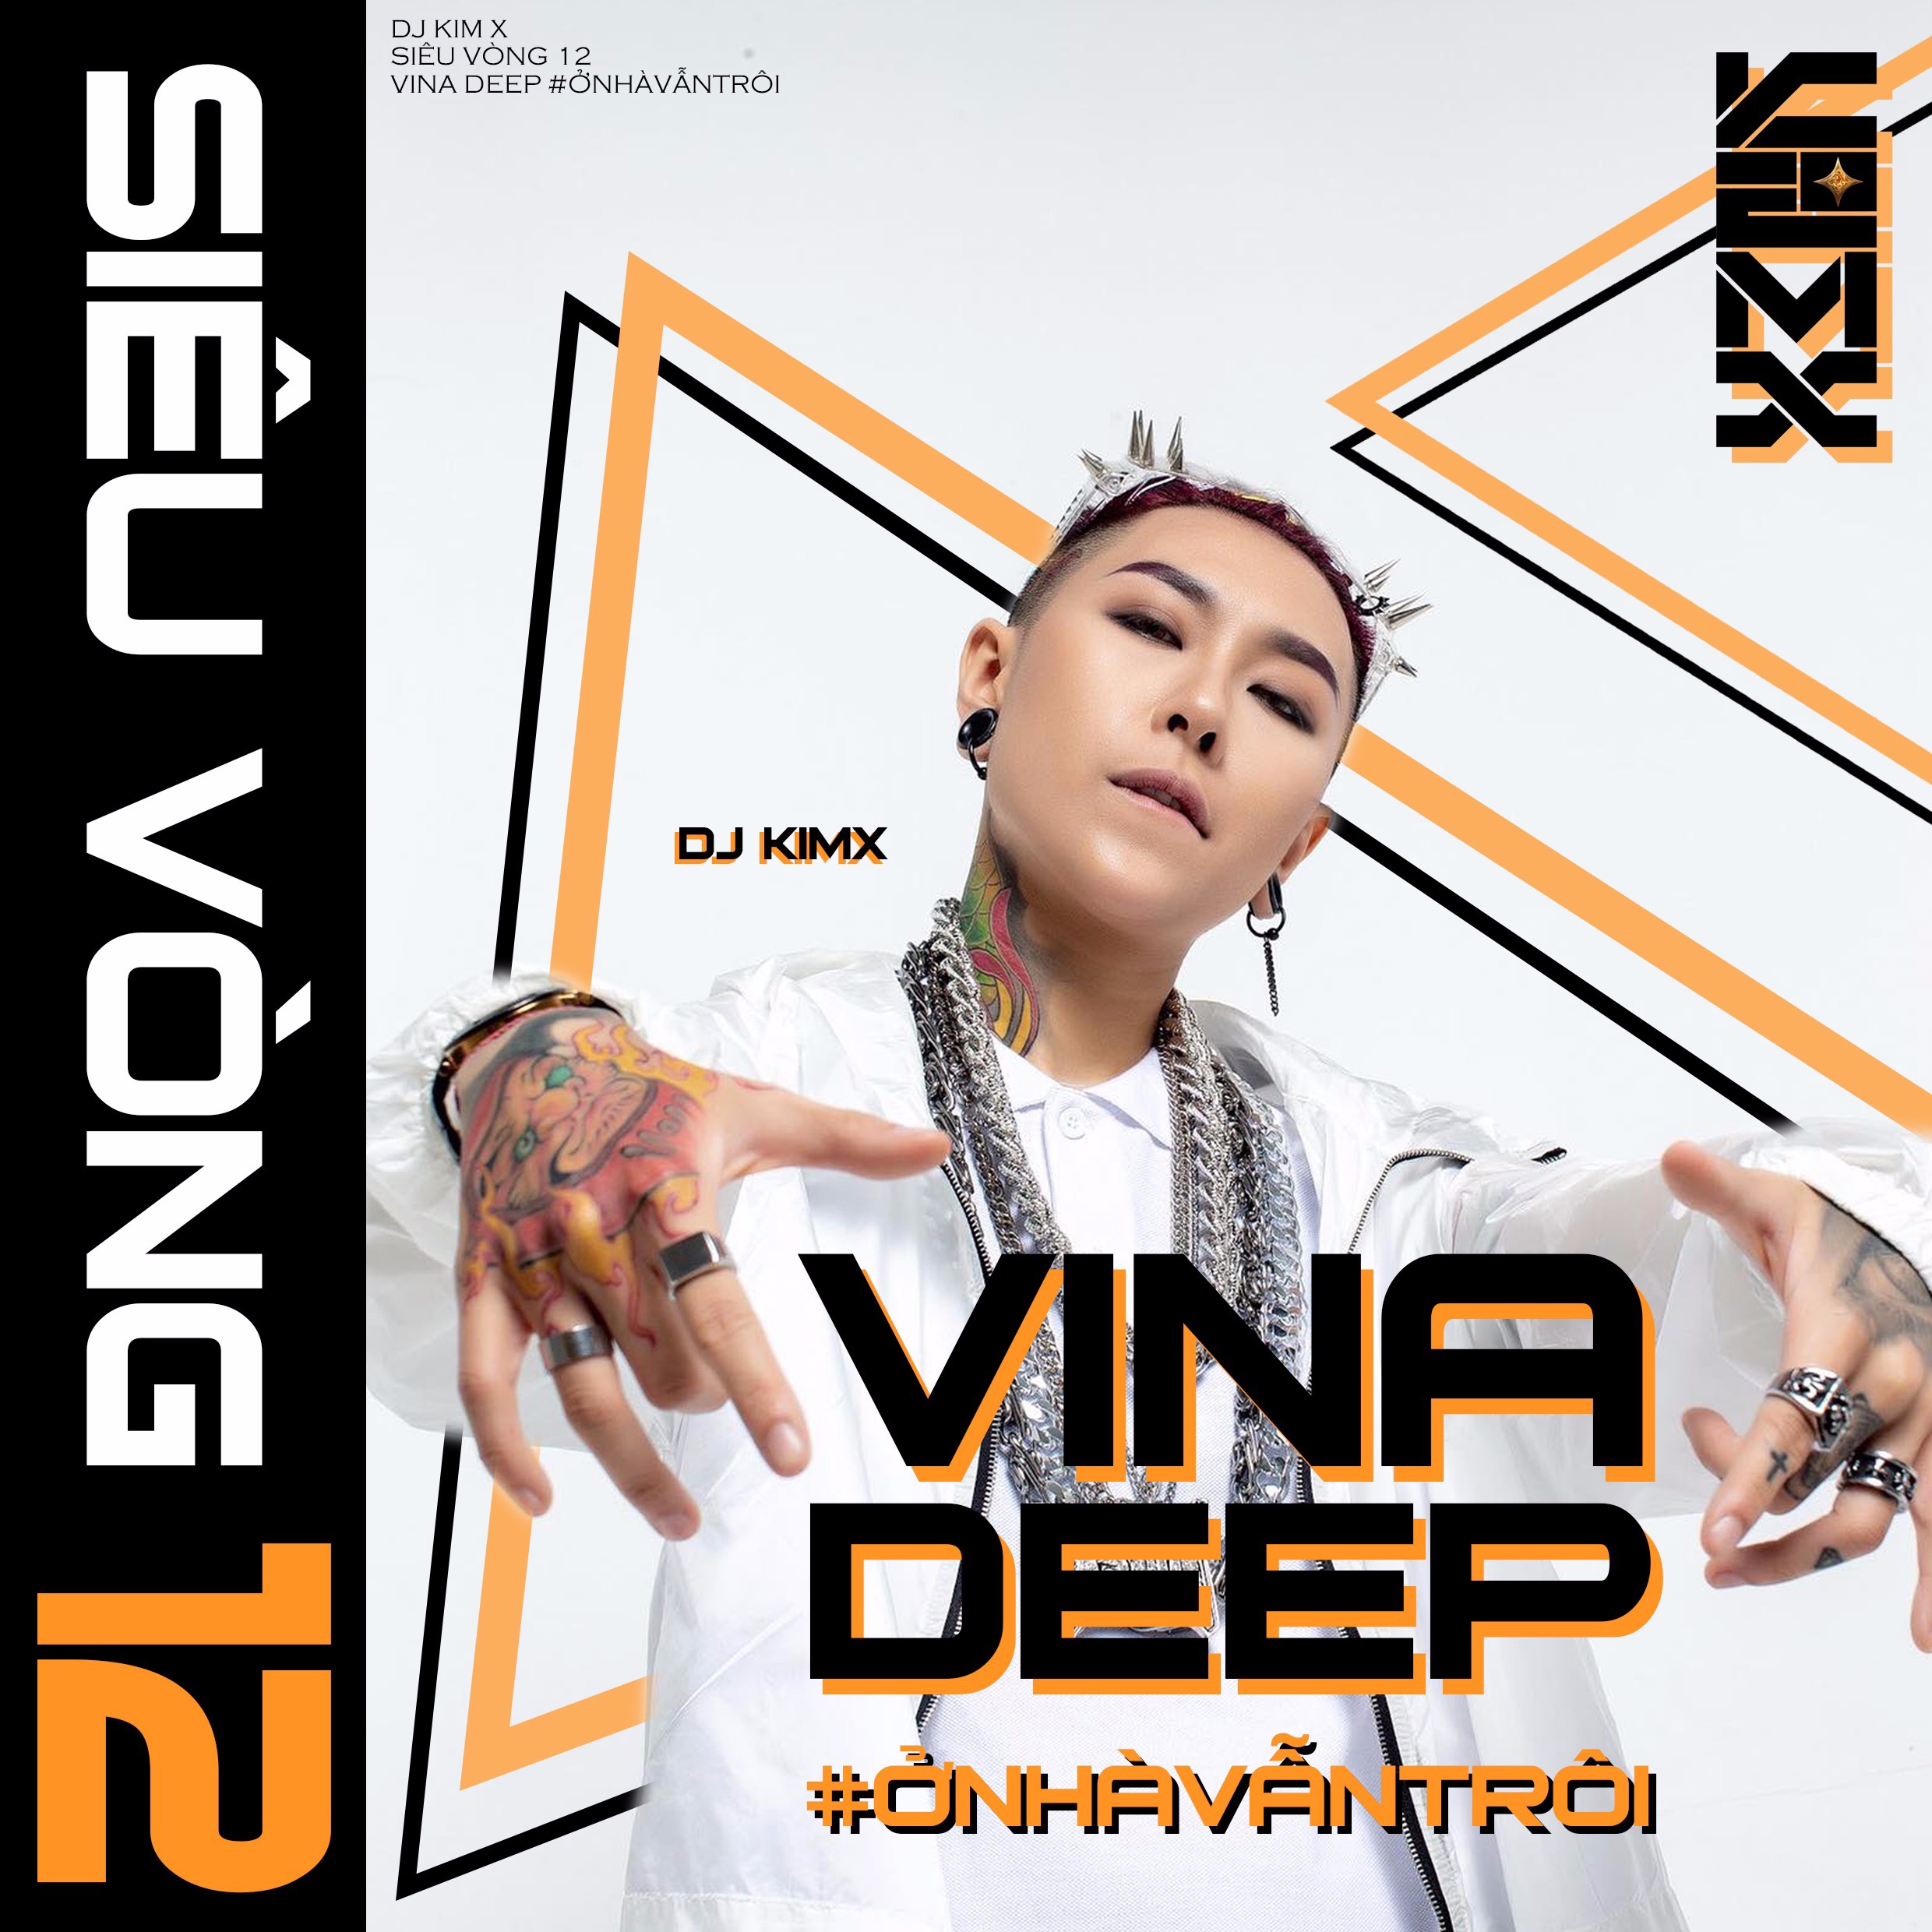 ഡൗൺലോഡ് #ỞNHÀVẪNTRÔI --- DJ KIMX --- MIXSET KIMX SIÊU VÒNG 12 --- VINADEEP